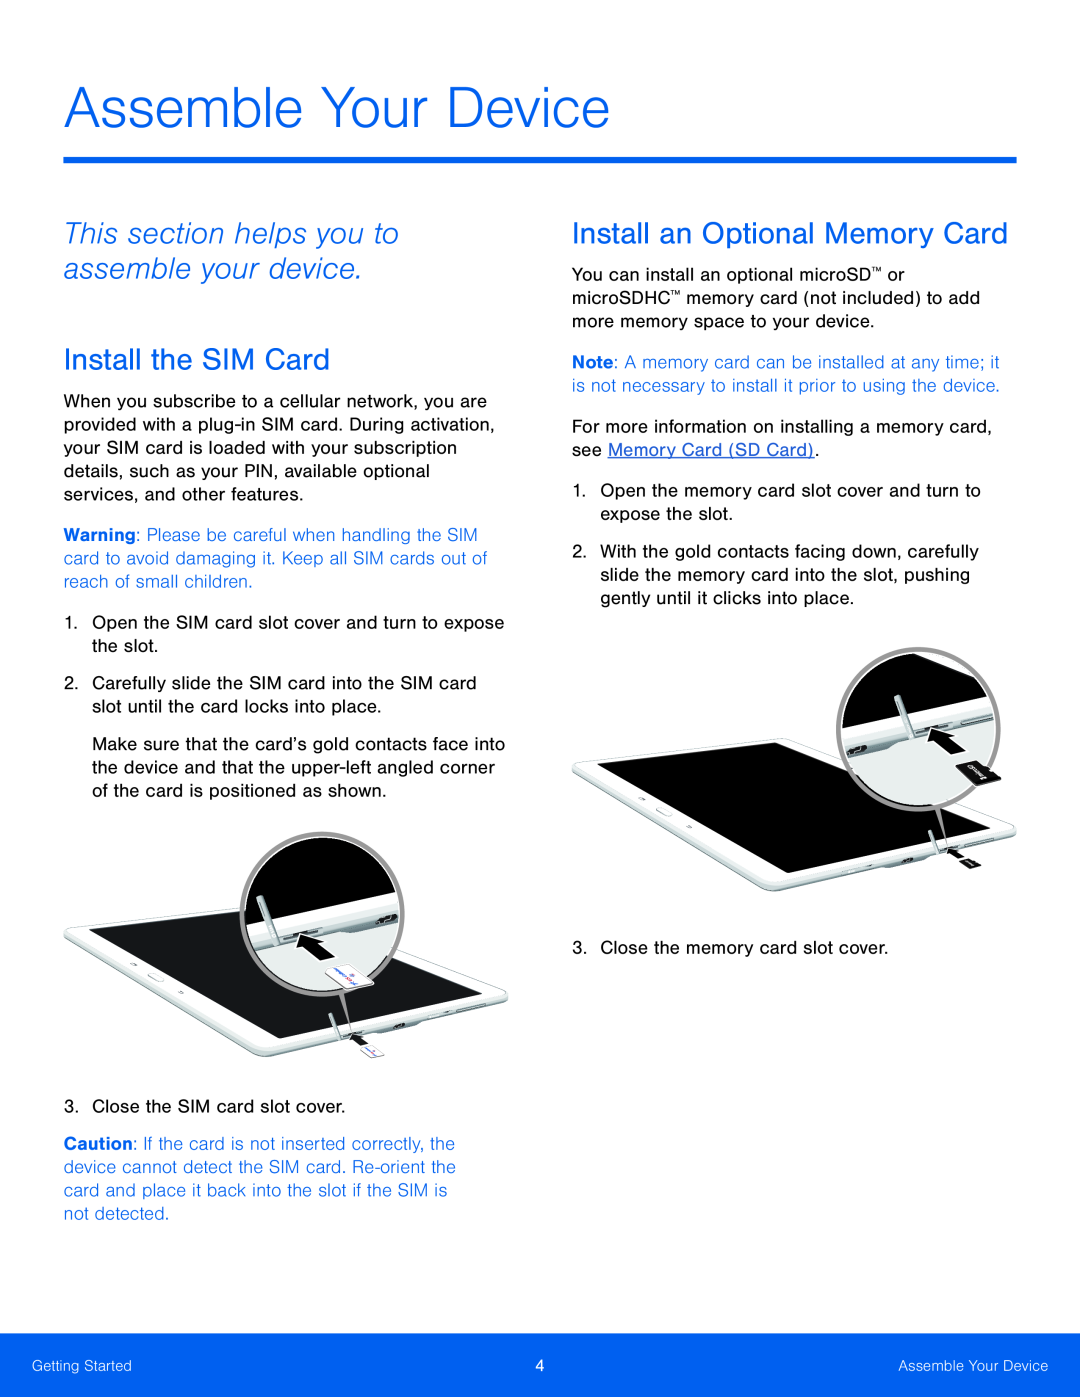 Install the SIM Card Galaxy Tab S 10.5 US Cellular